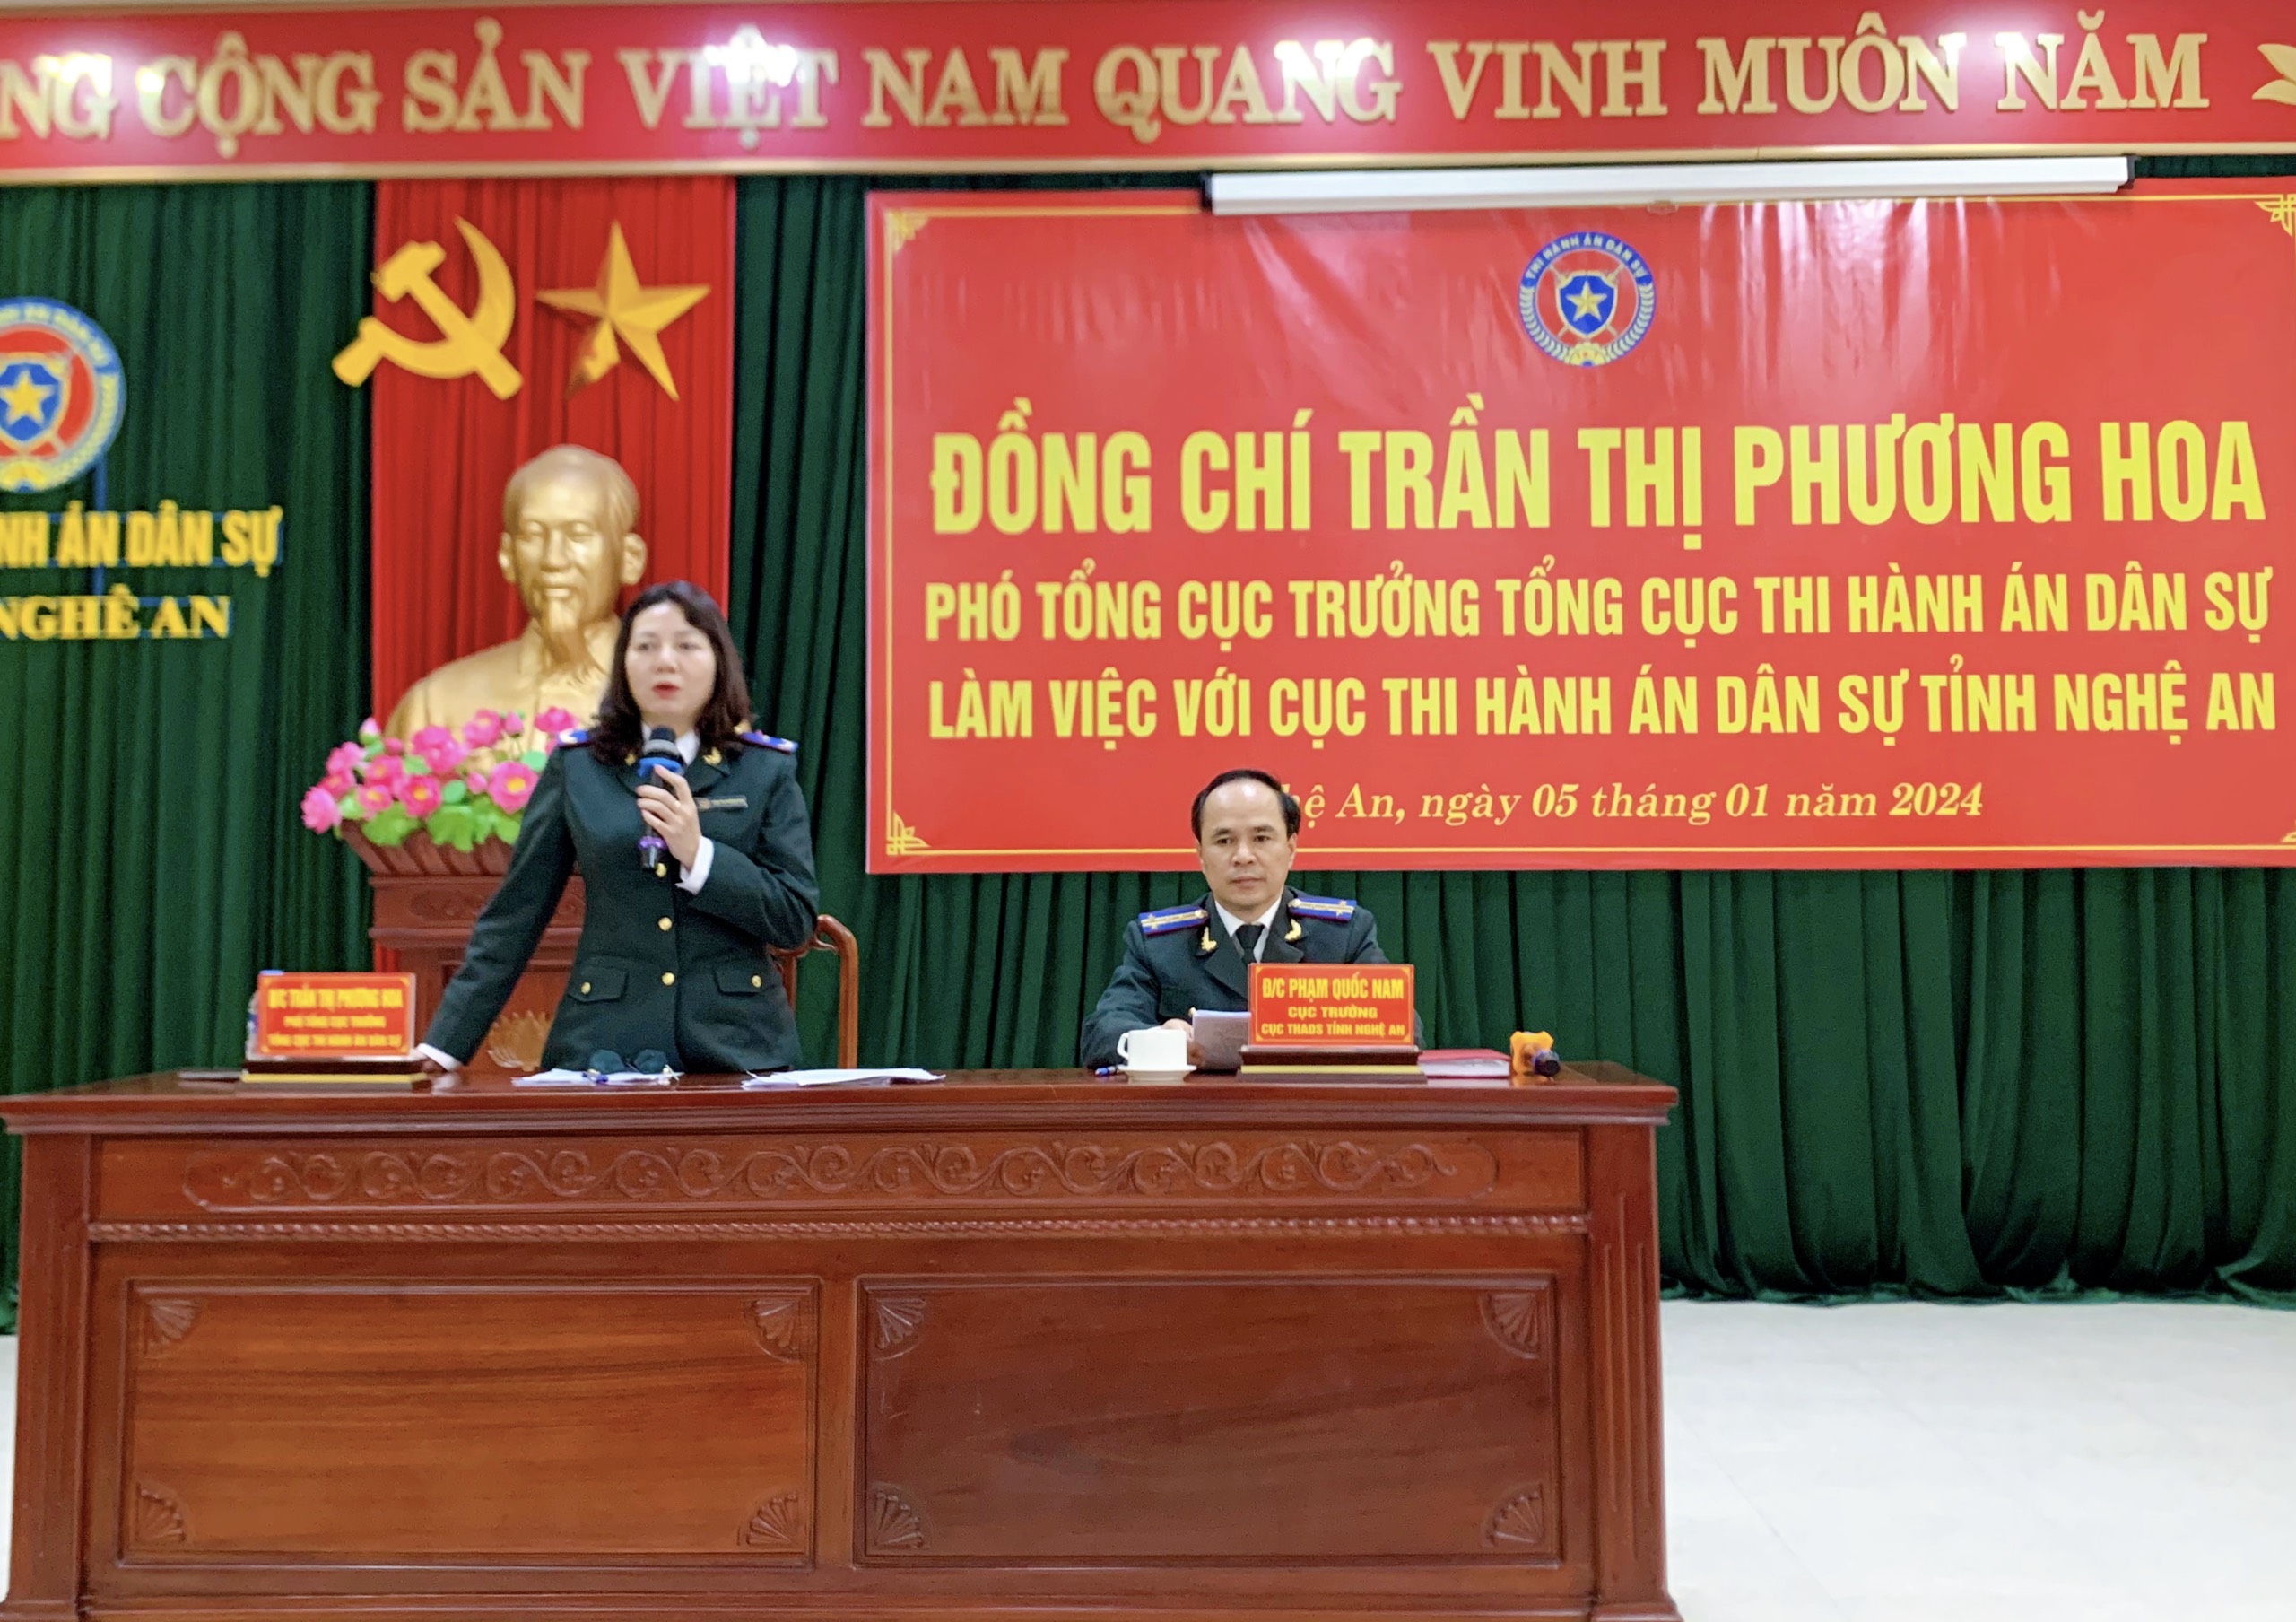 Đồng chí Trần Thị Phương Hoa – Phó Tổng cục trưởng Tổng cục Thi hành án dân làm việc với Cục Thi hành án dân sự tỉnh Nghệ An.